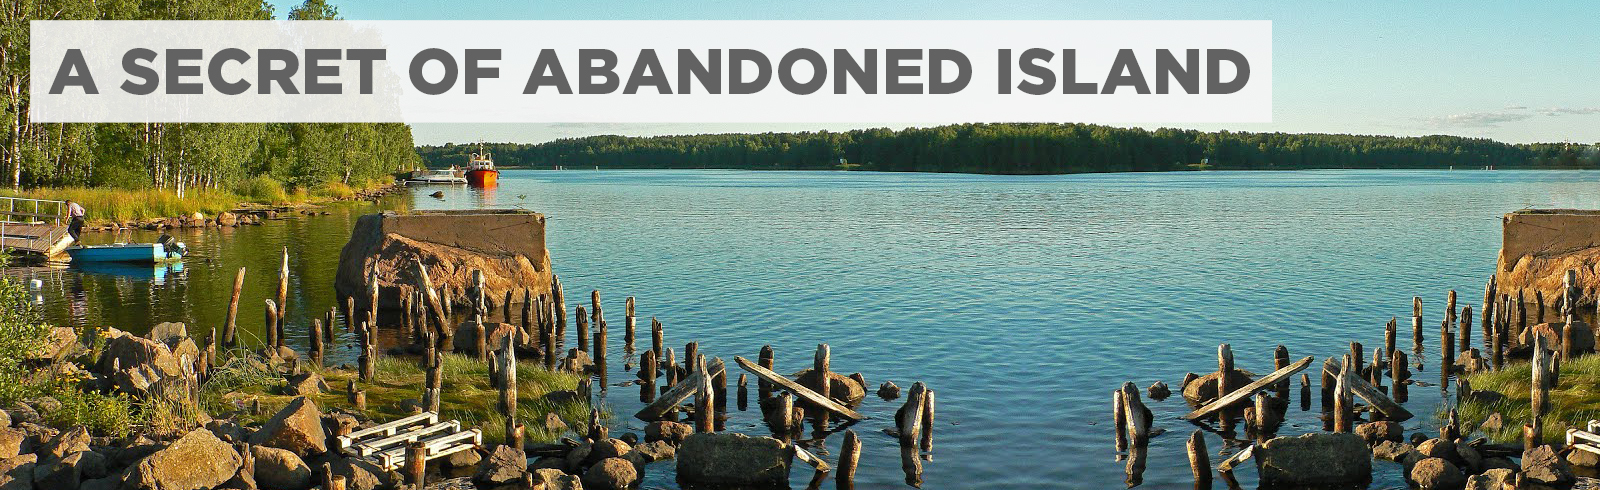 A Secret of Abandoned Island